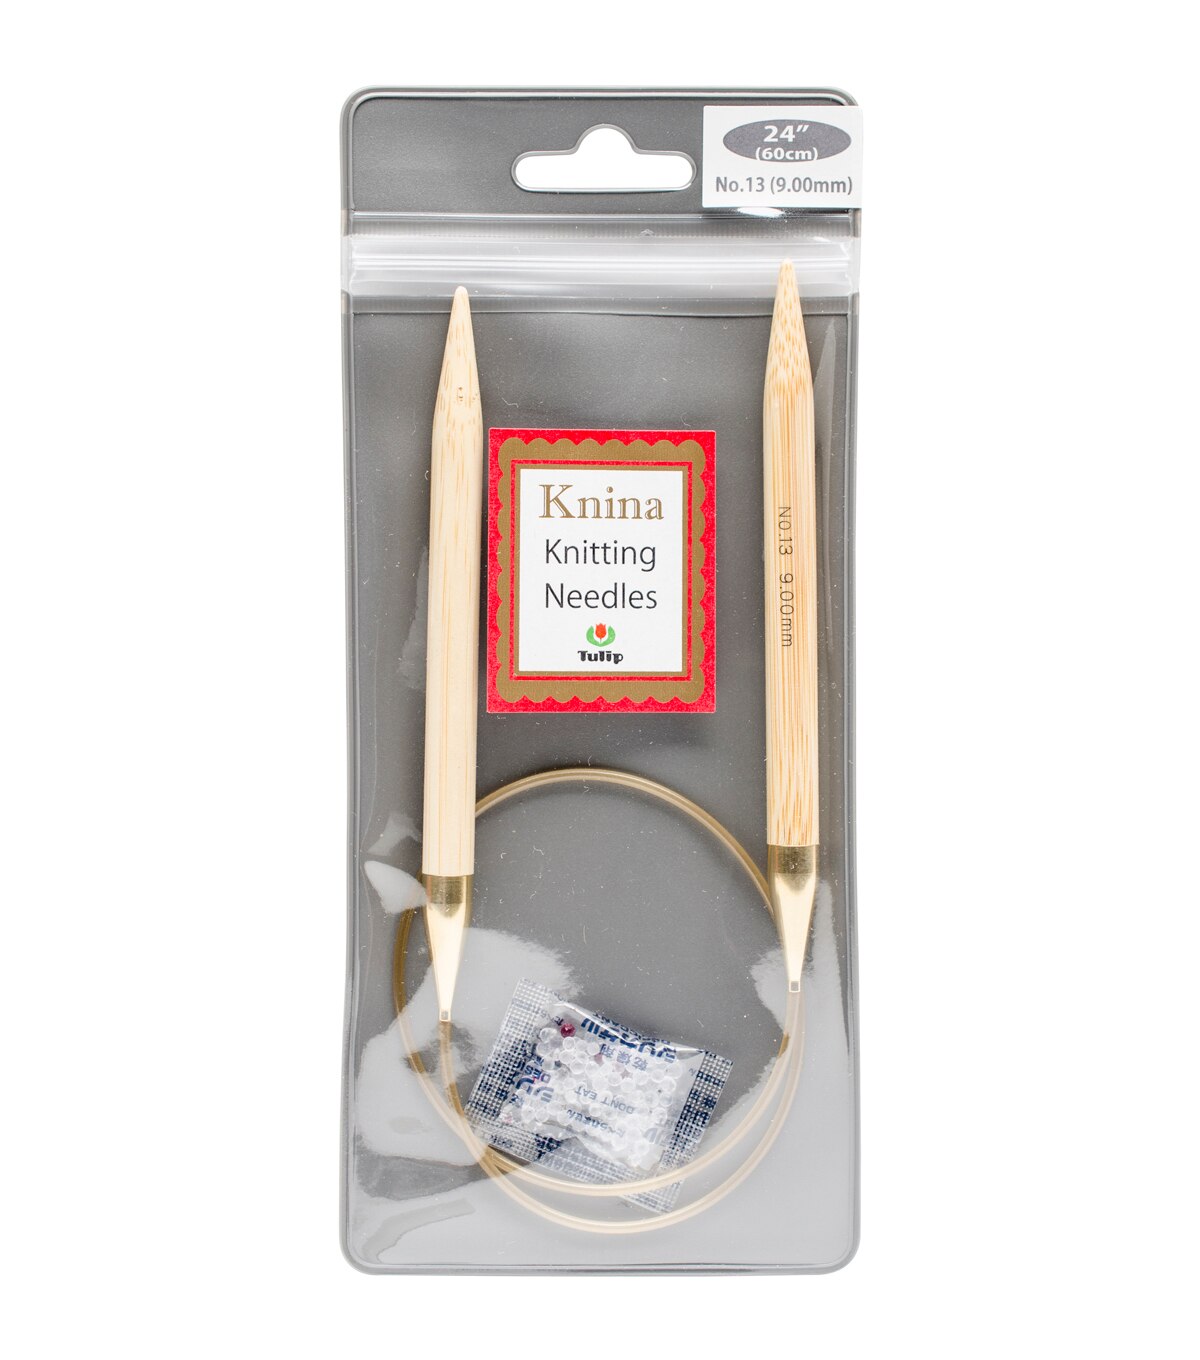 Tulip Needle Company Knina Knitting Needles 24'' Size 13 | JOANN